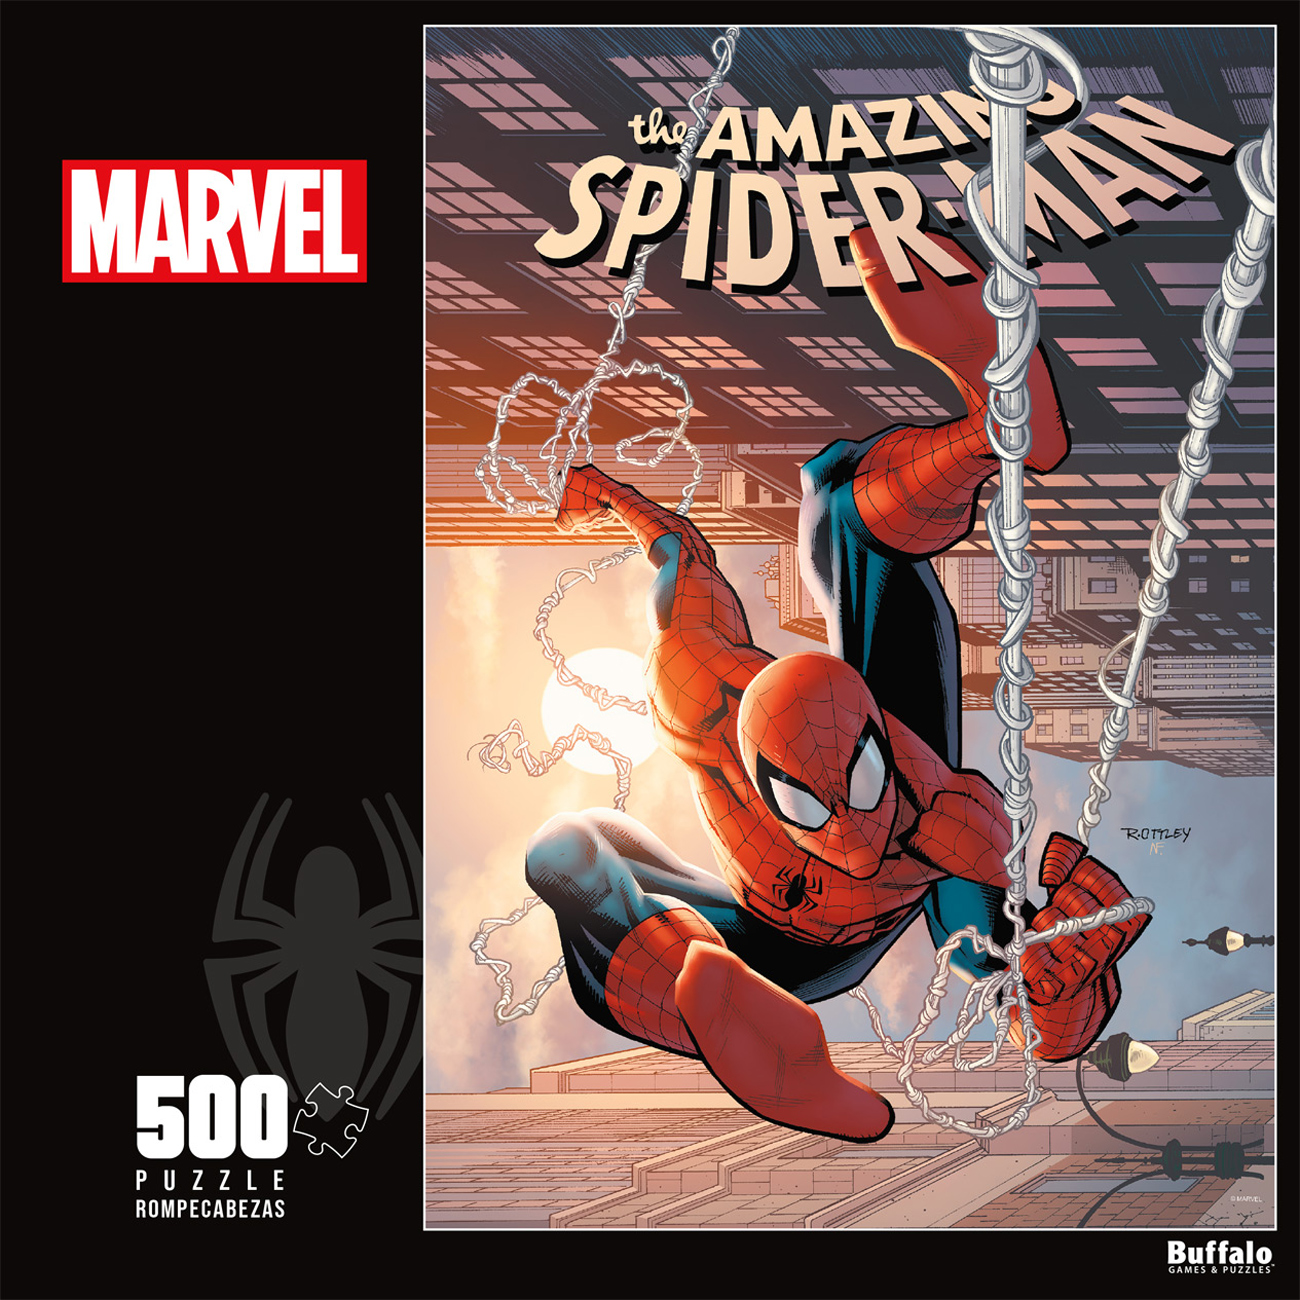 The Amazing Spiderman #29